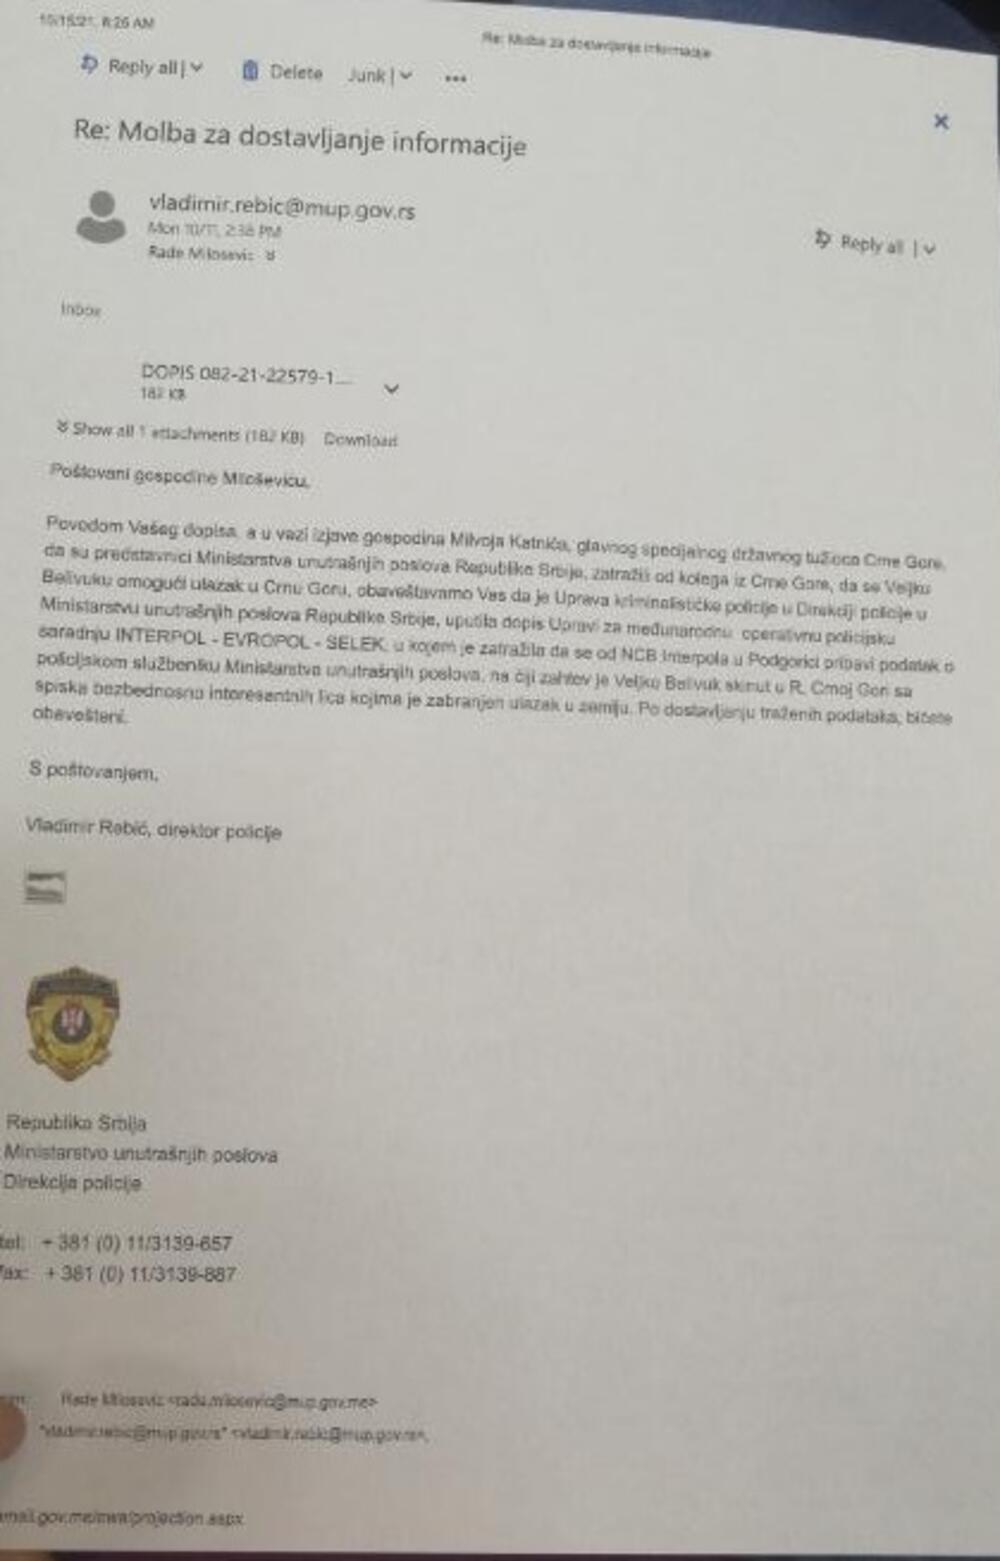 Odgovor direktora policije Srbije